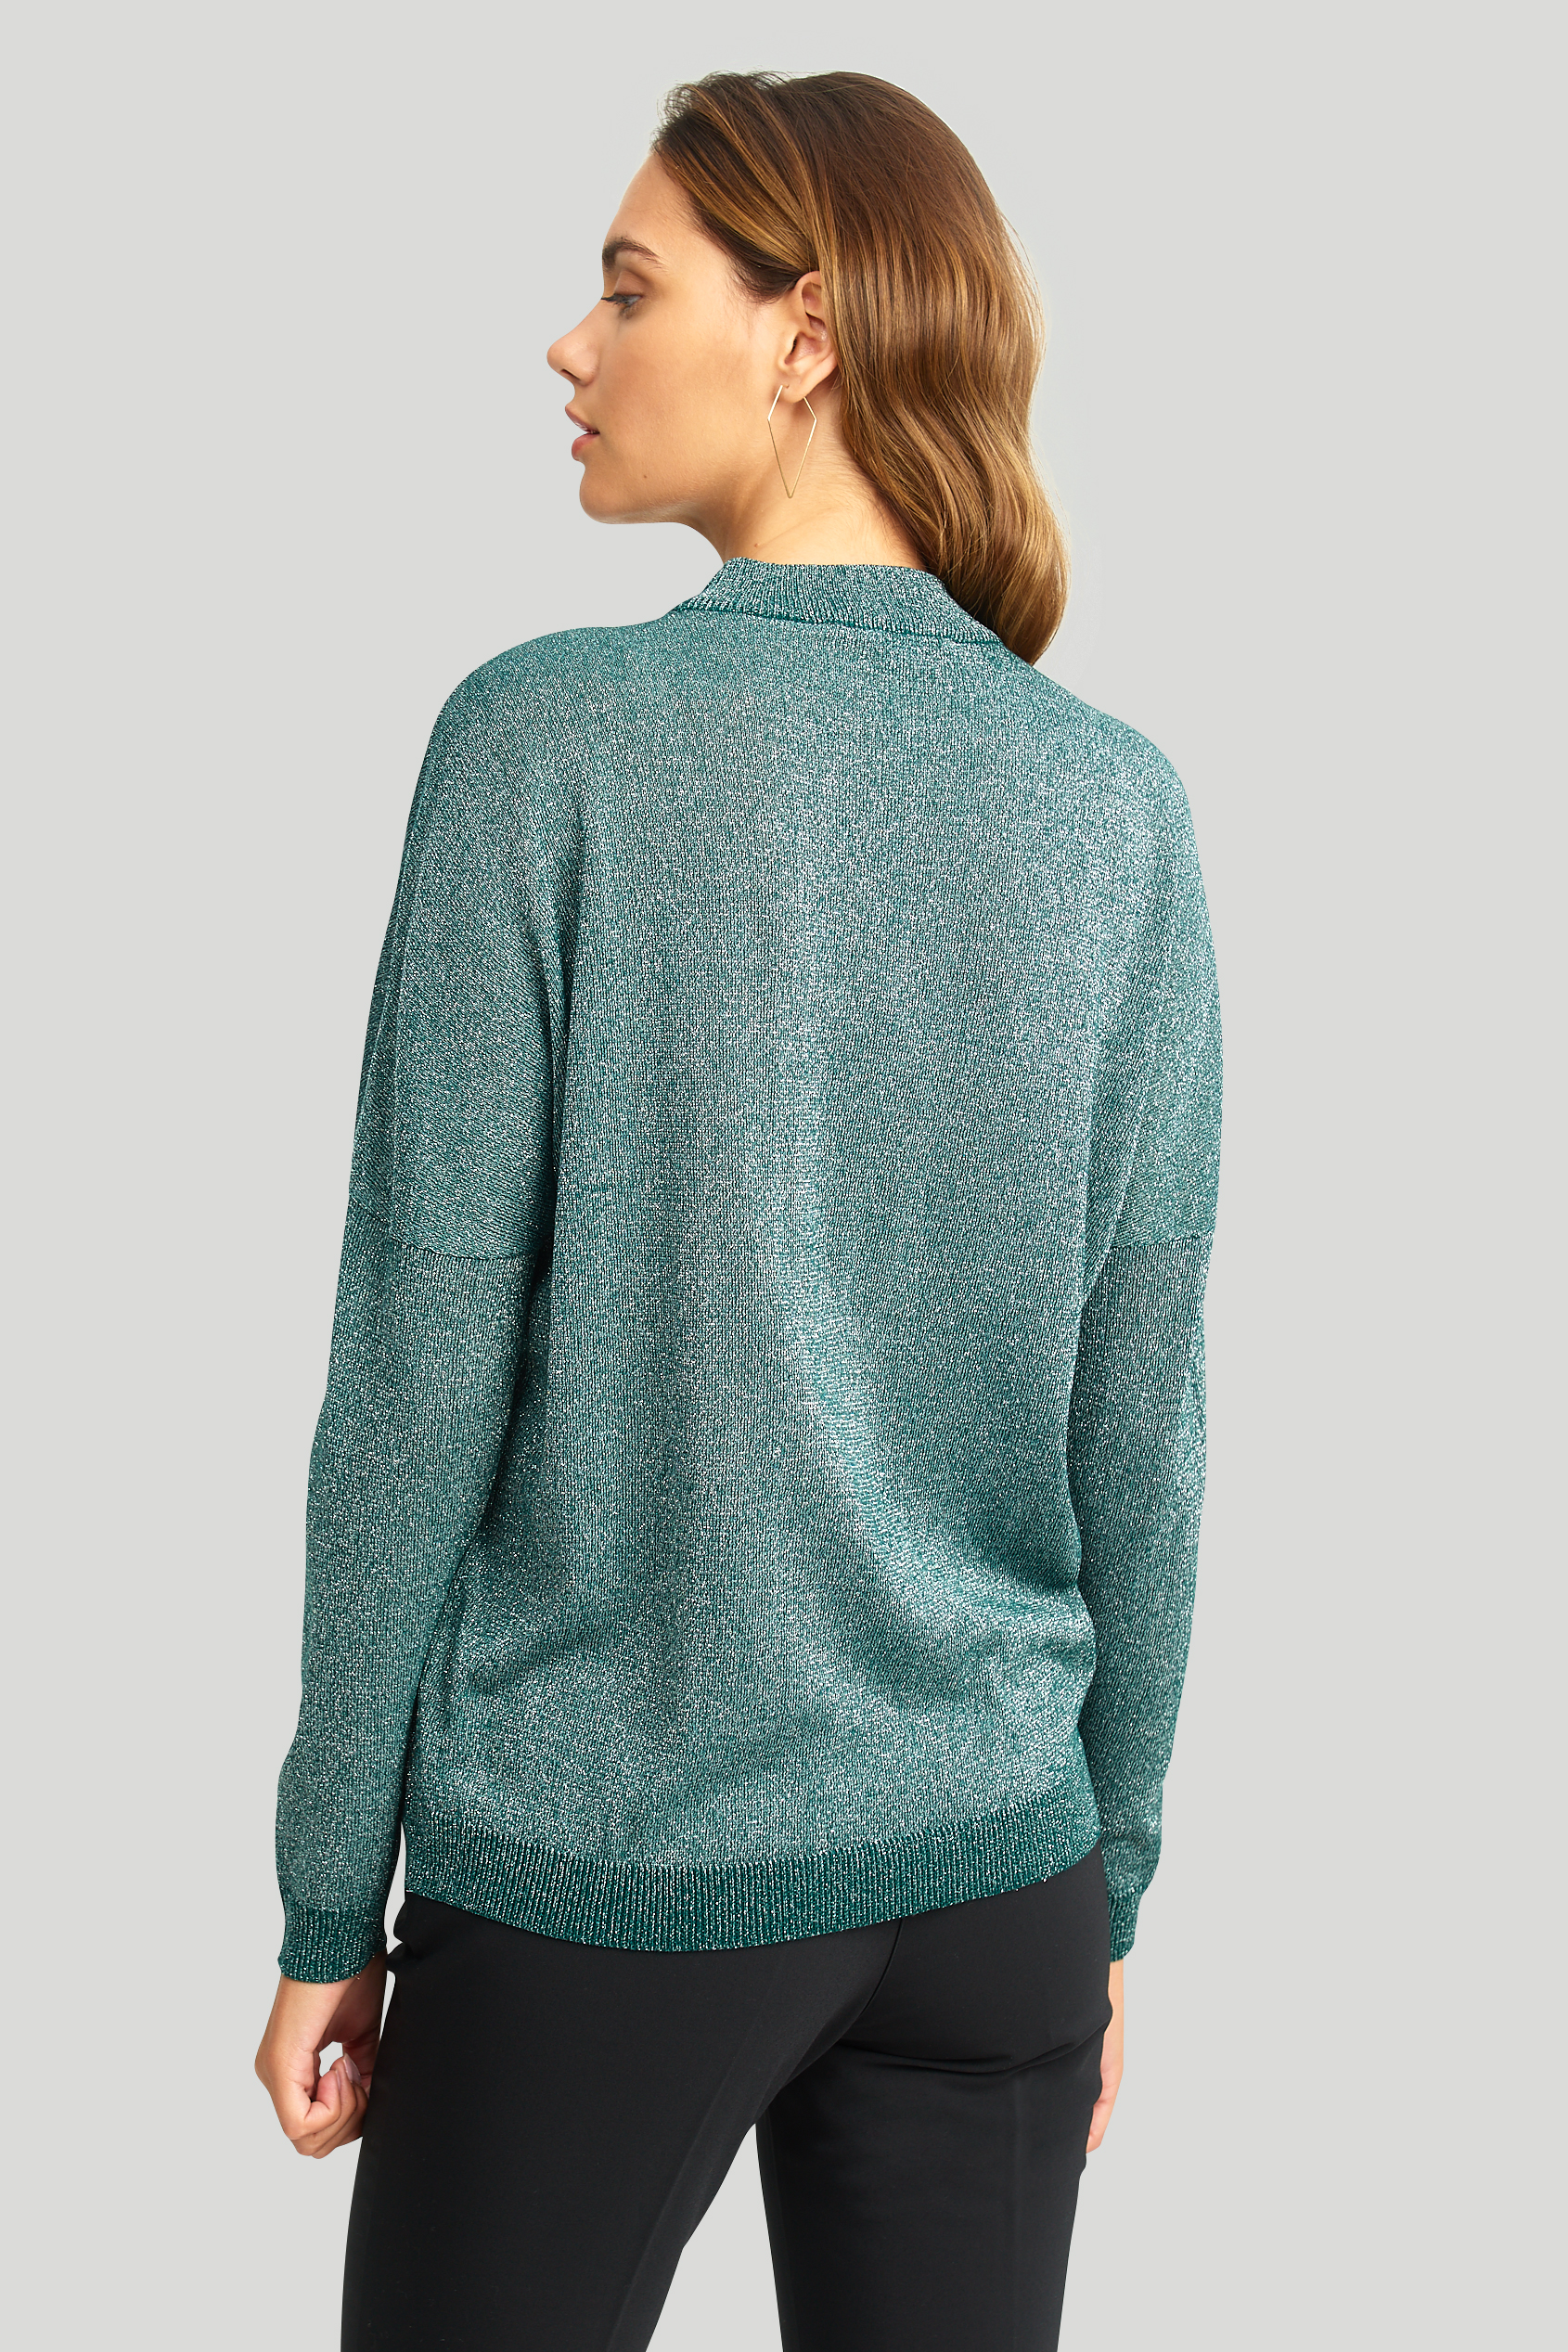 Elegancki sweter z połyskującą nitką